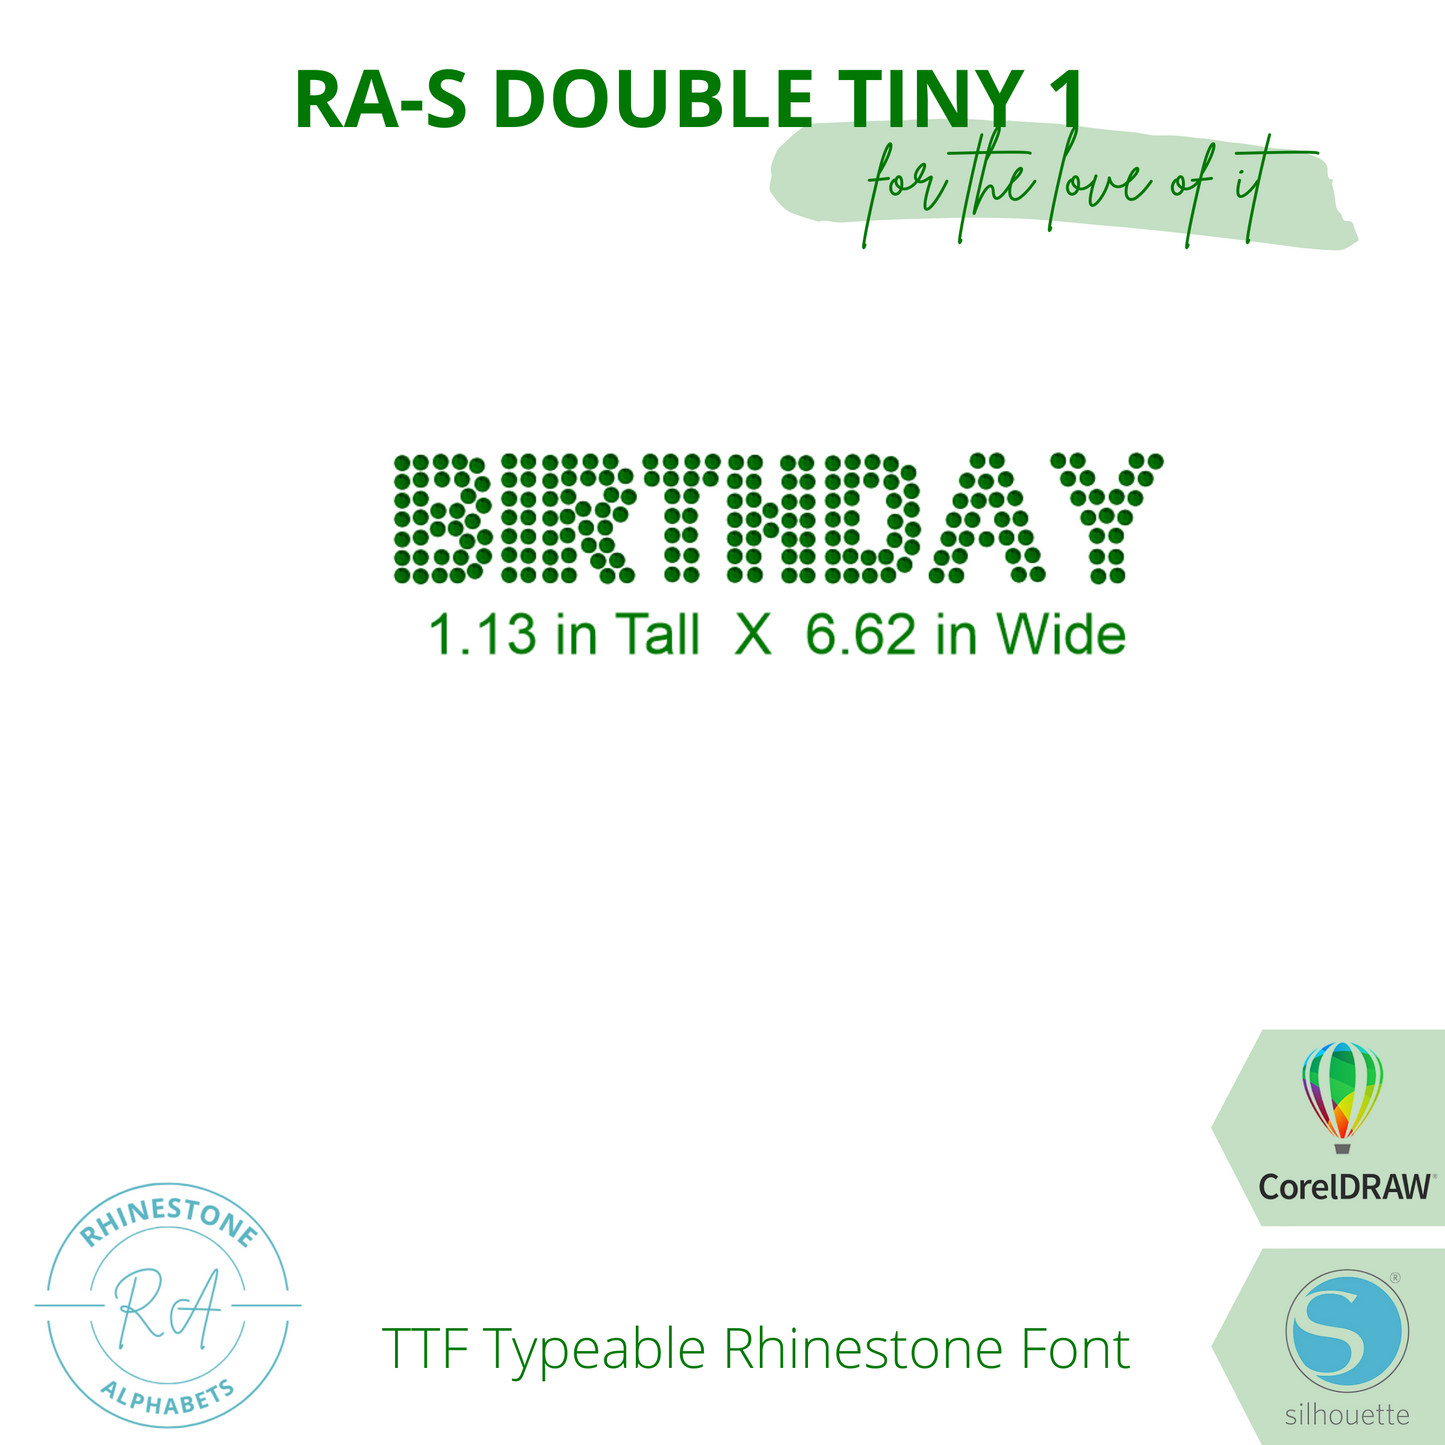 RA-S Double Tiny 1 - RhinestoneAlphabets